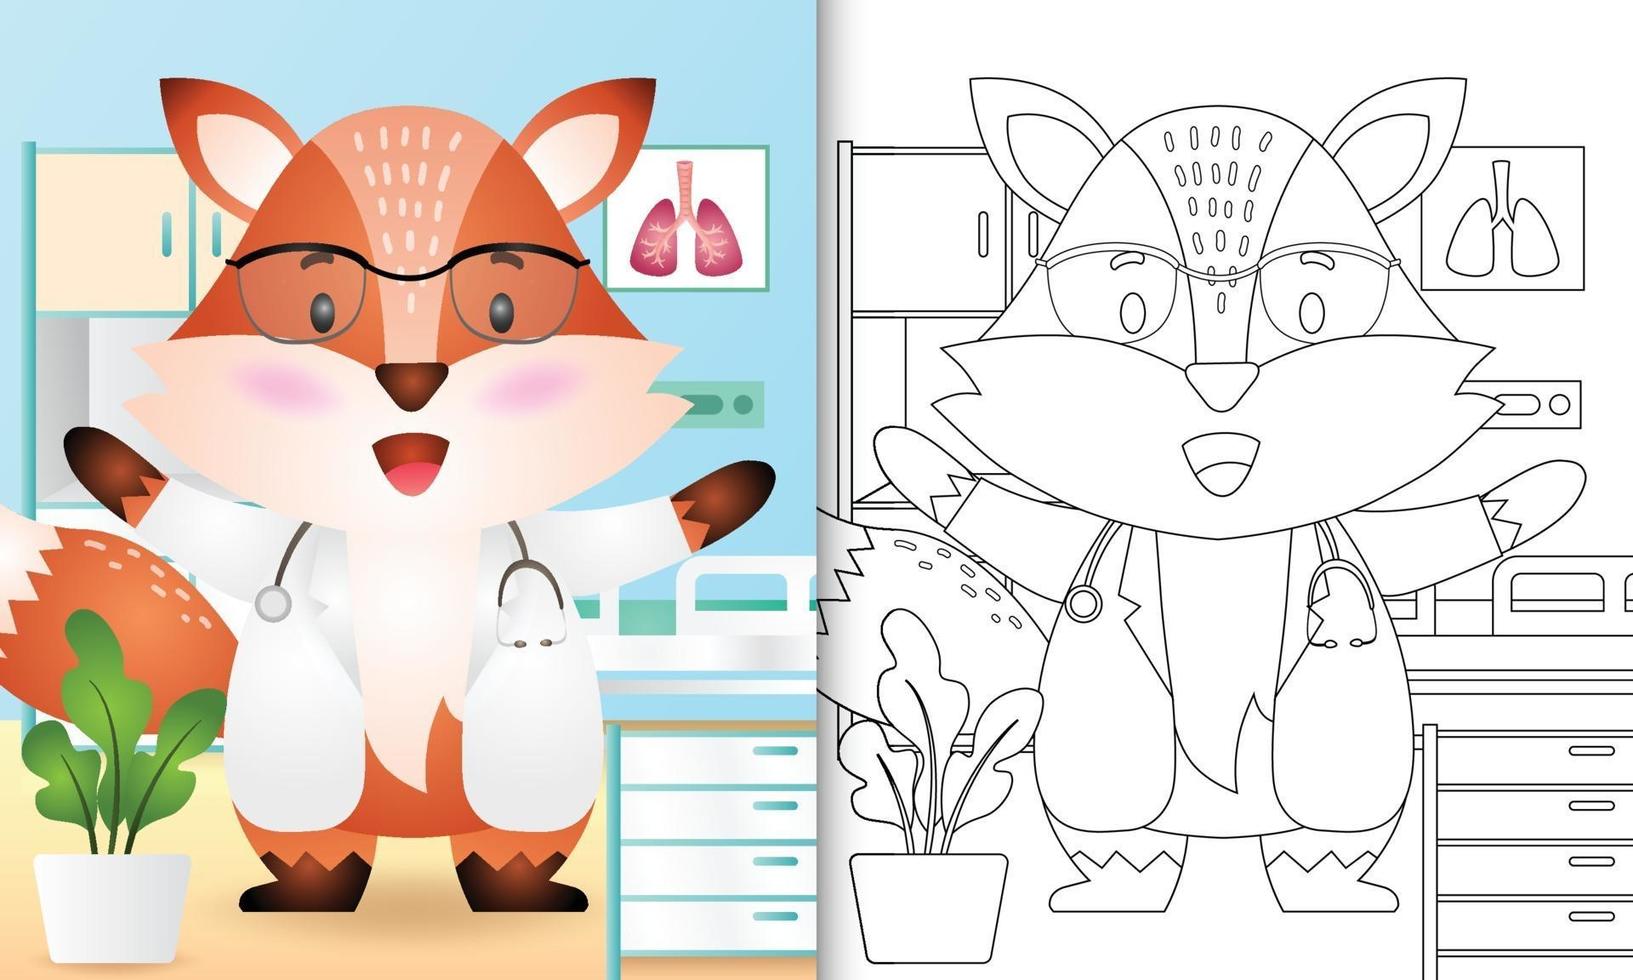 kleurboek voor kinderen met een schattige vos arts karakter illustratie vector